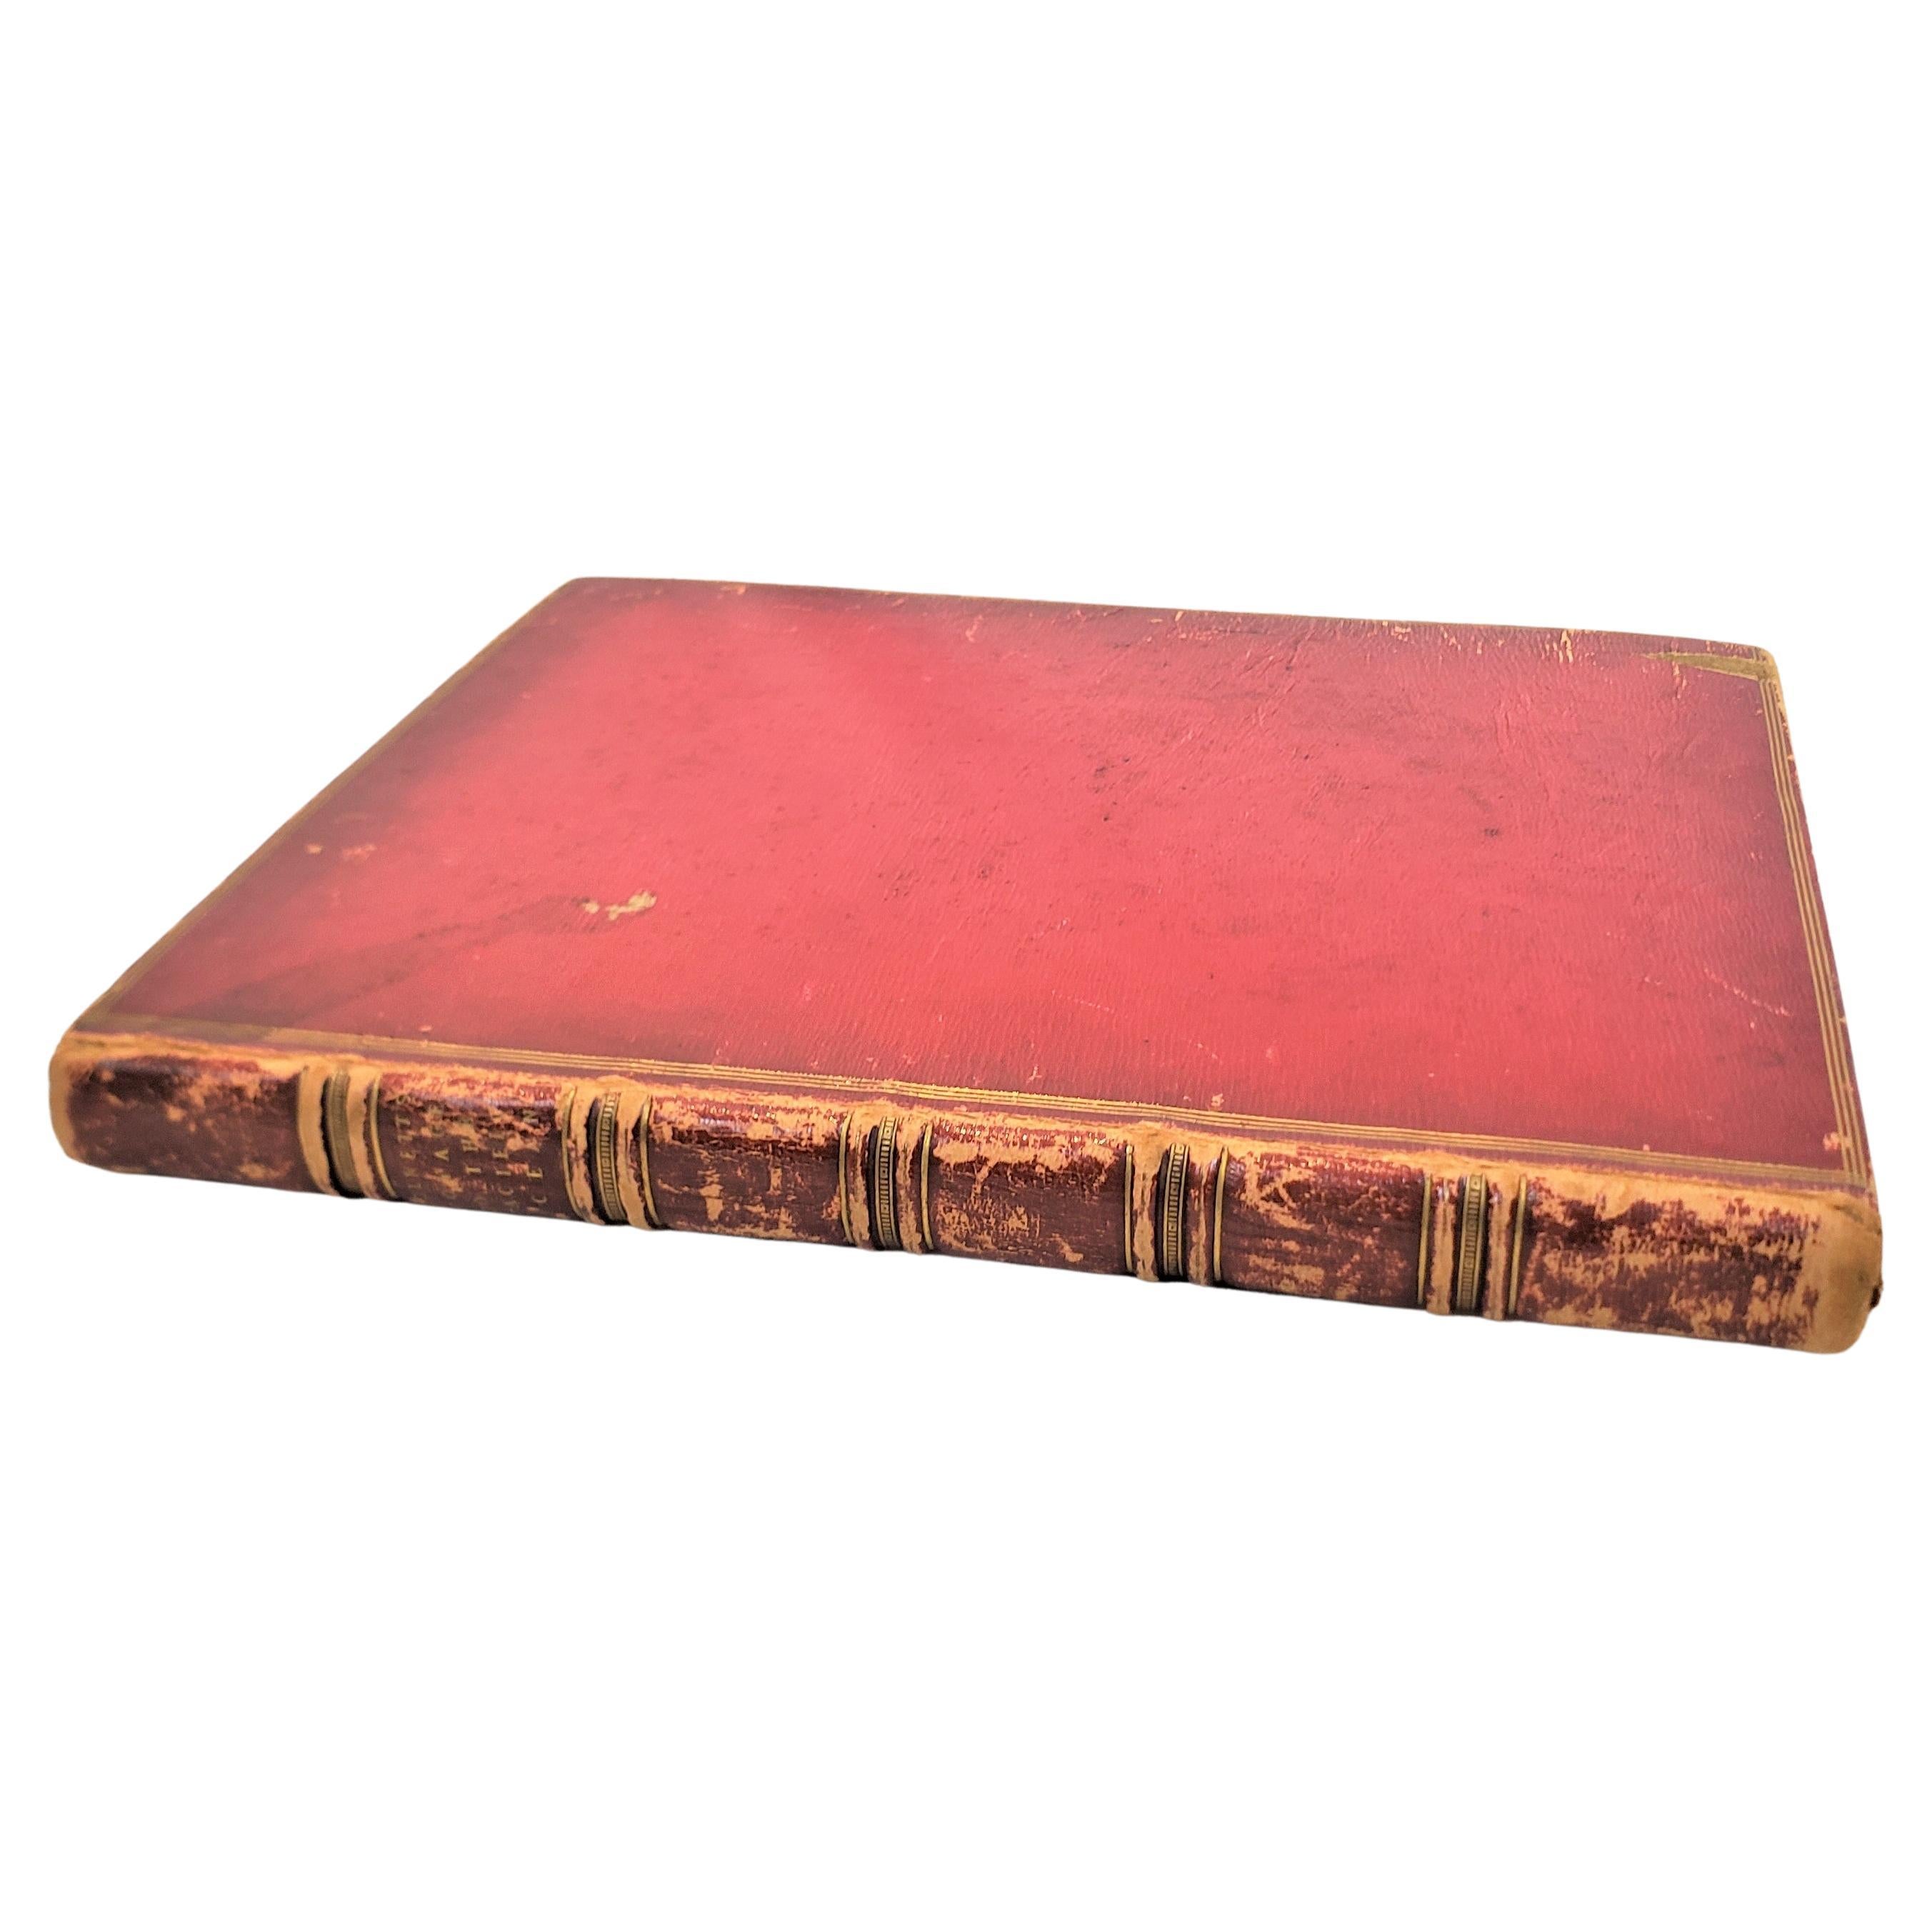 Livre ancien de James Colnett « A Voyage to the South Atlantic & Round Cape Hope », 1798